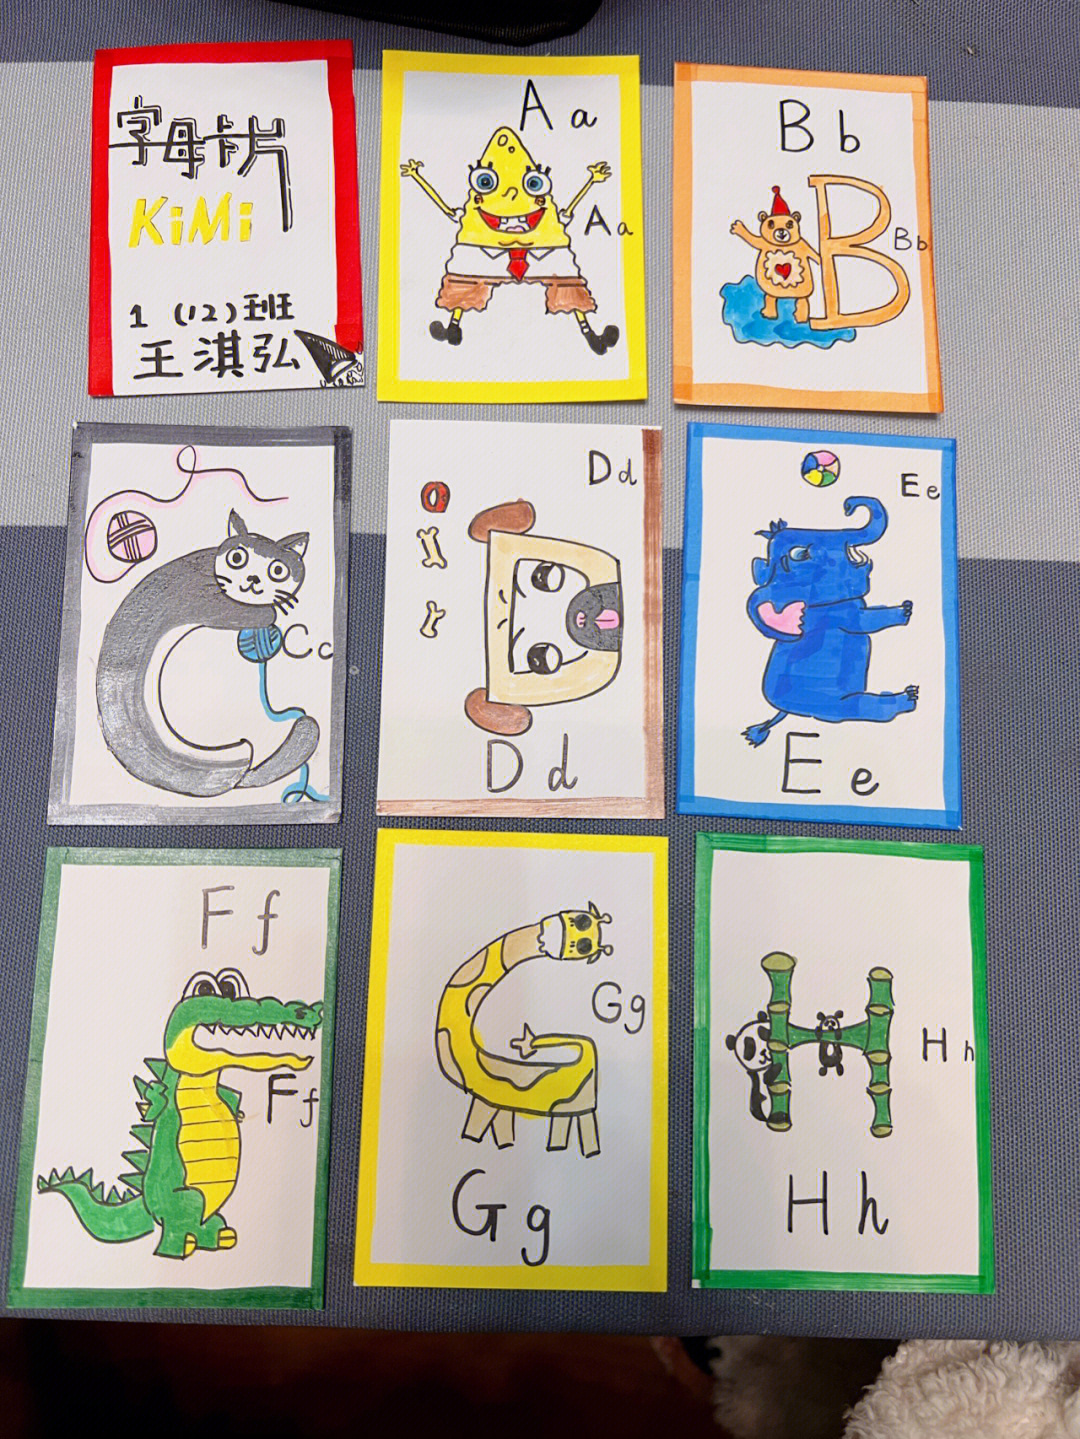 26个英文字母卡片制作